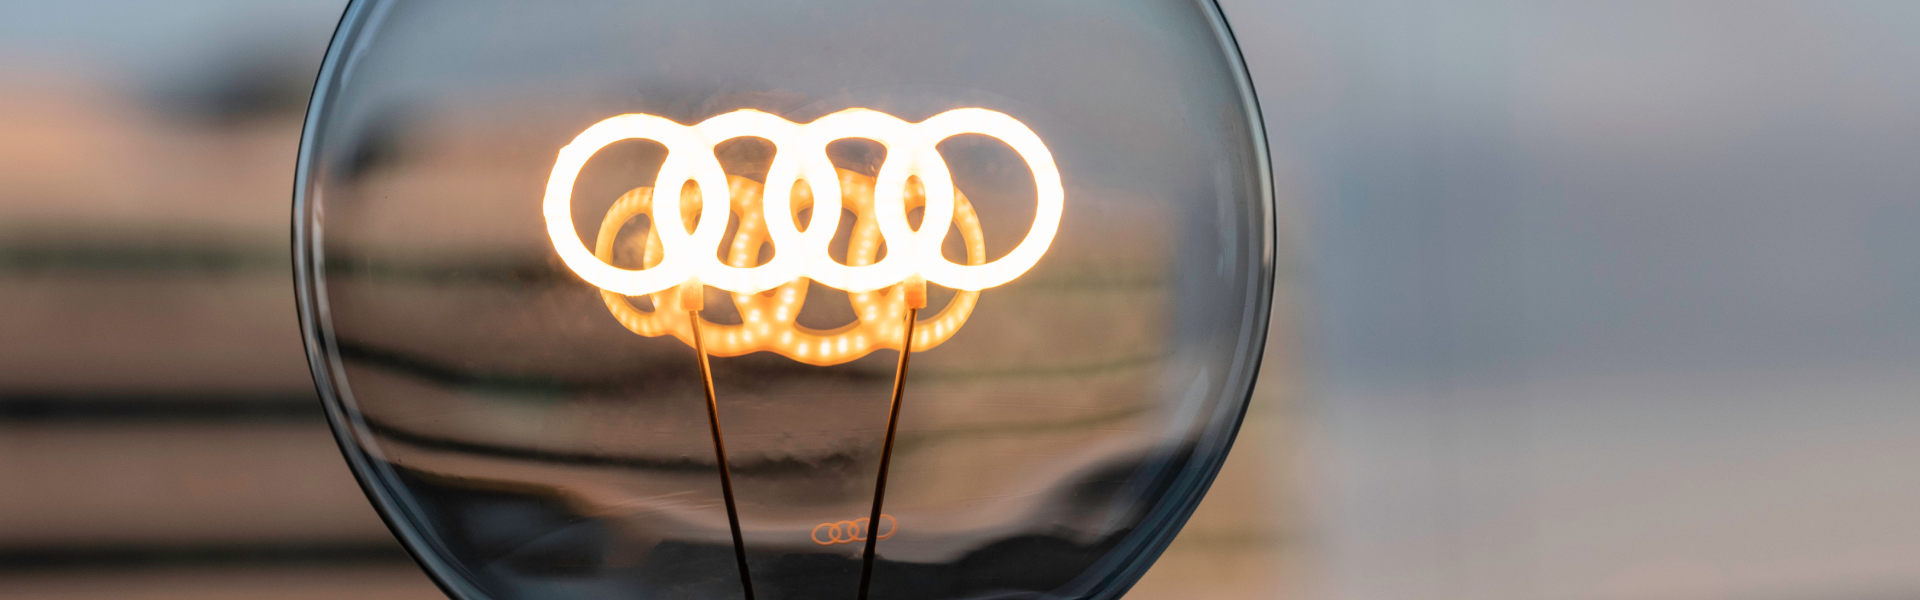 Glühbirne mit den Vier Ringen von Audi